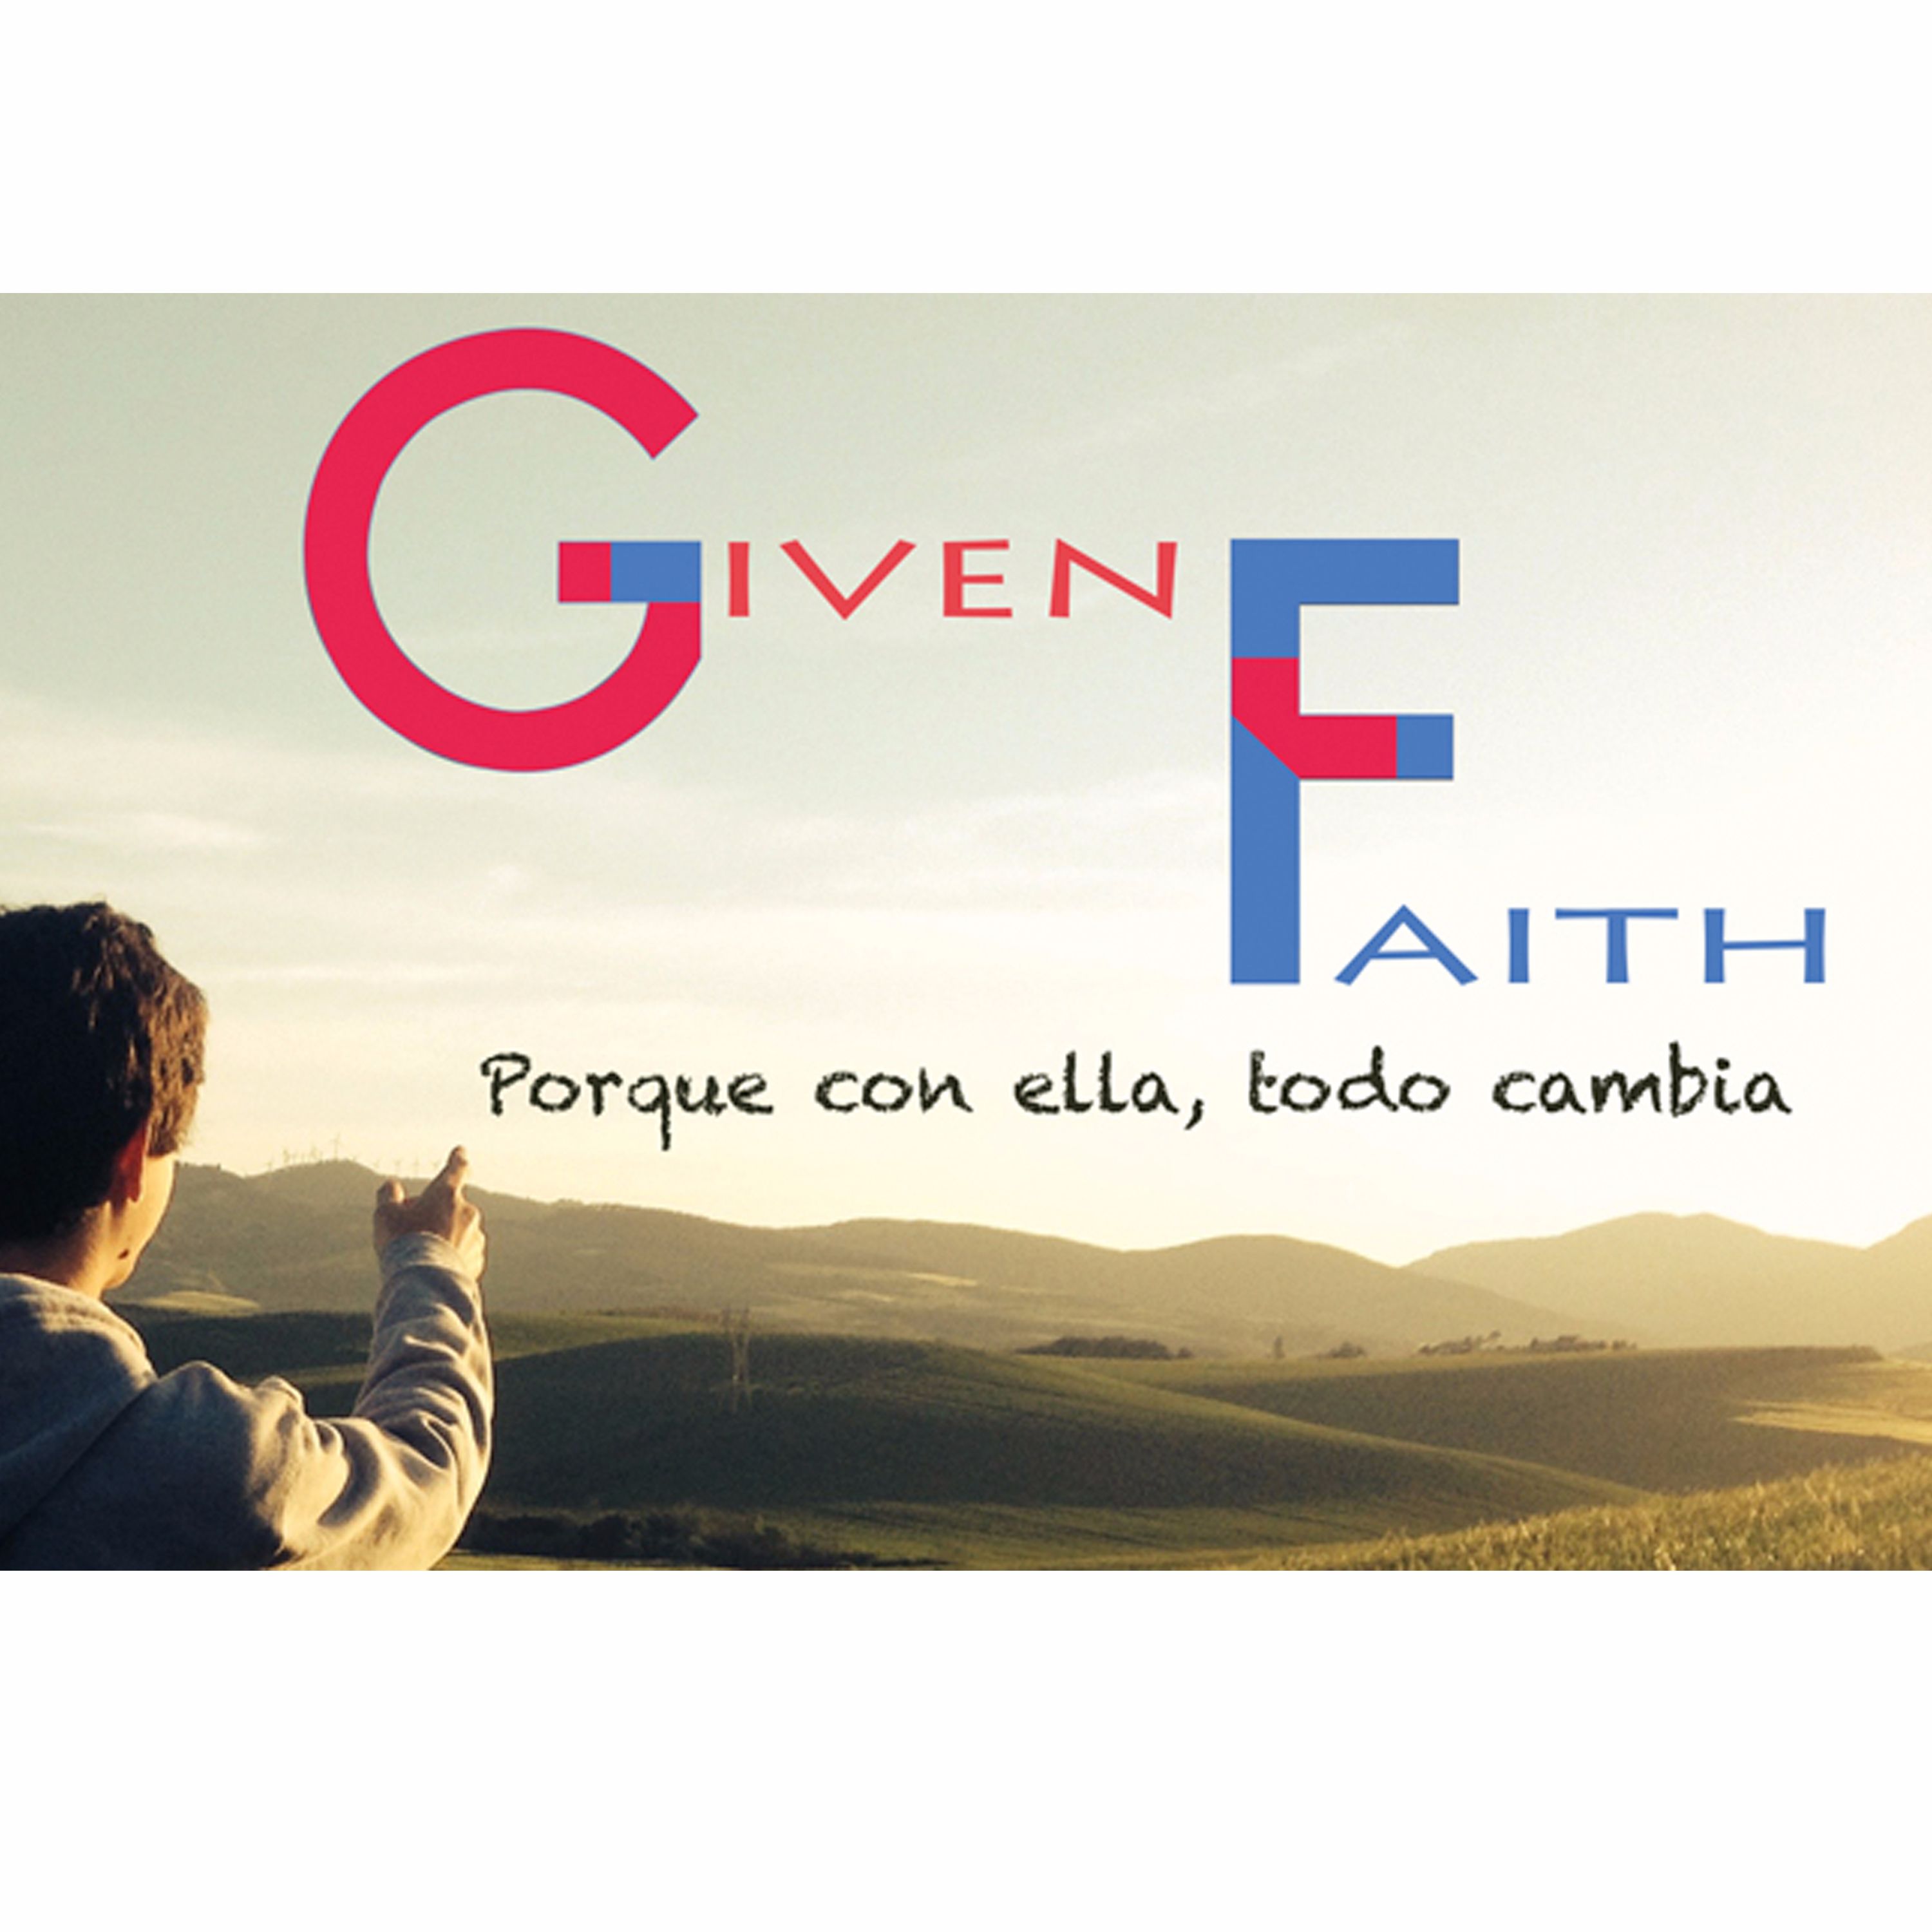 GivenFaith